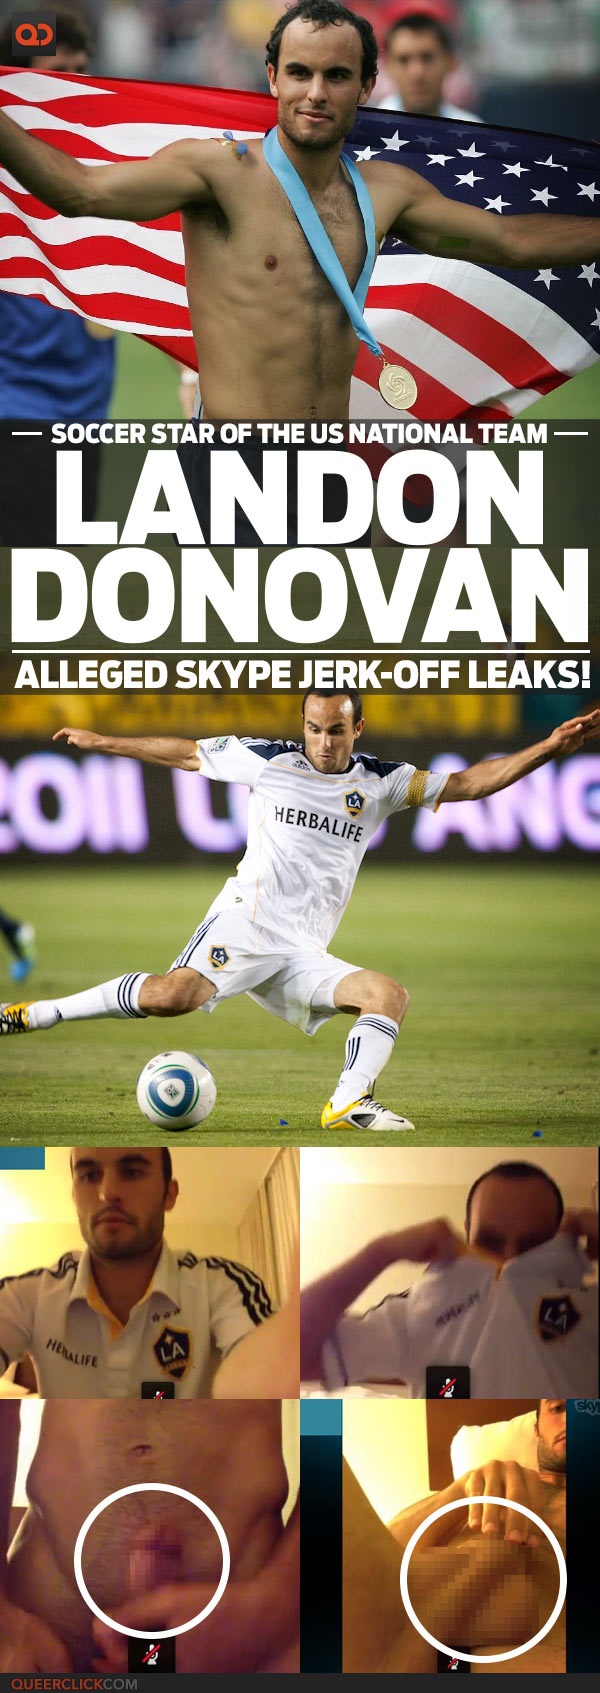 Landon Donovan, Soccer Star Of The US National Team, Alleged Skype Jerk-Off Leaks!